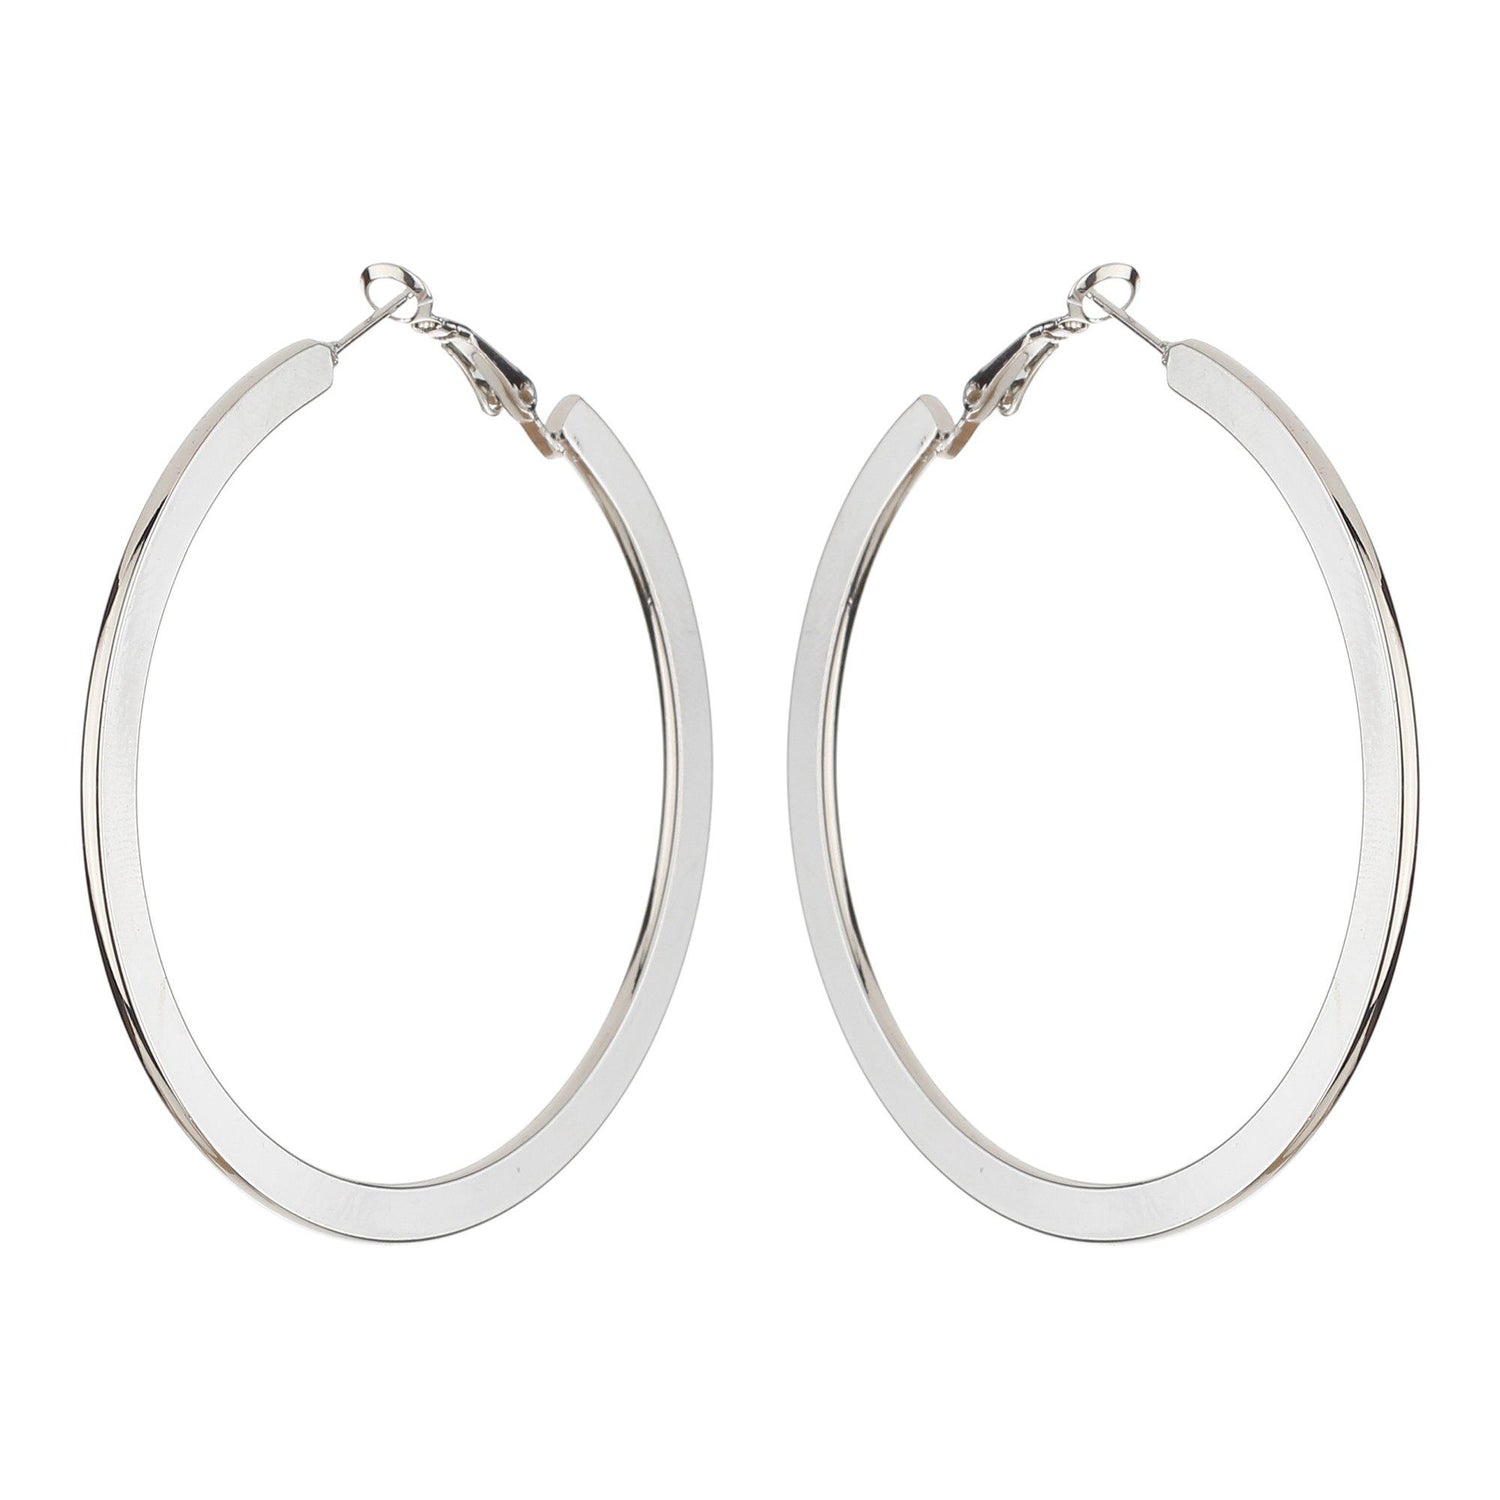 Designer Korean Circle Hoop Earrings-Earrings-ONESKYSHOP